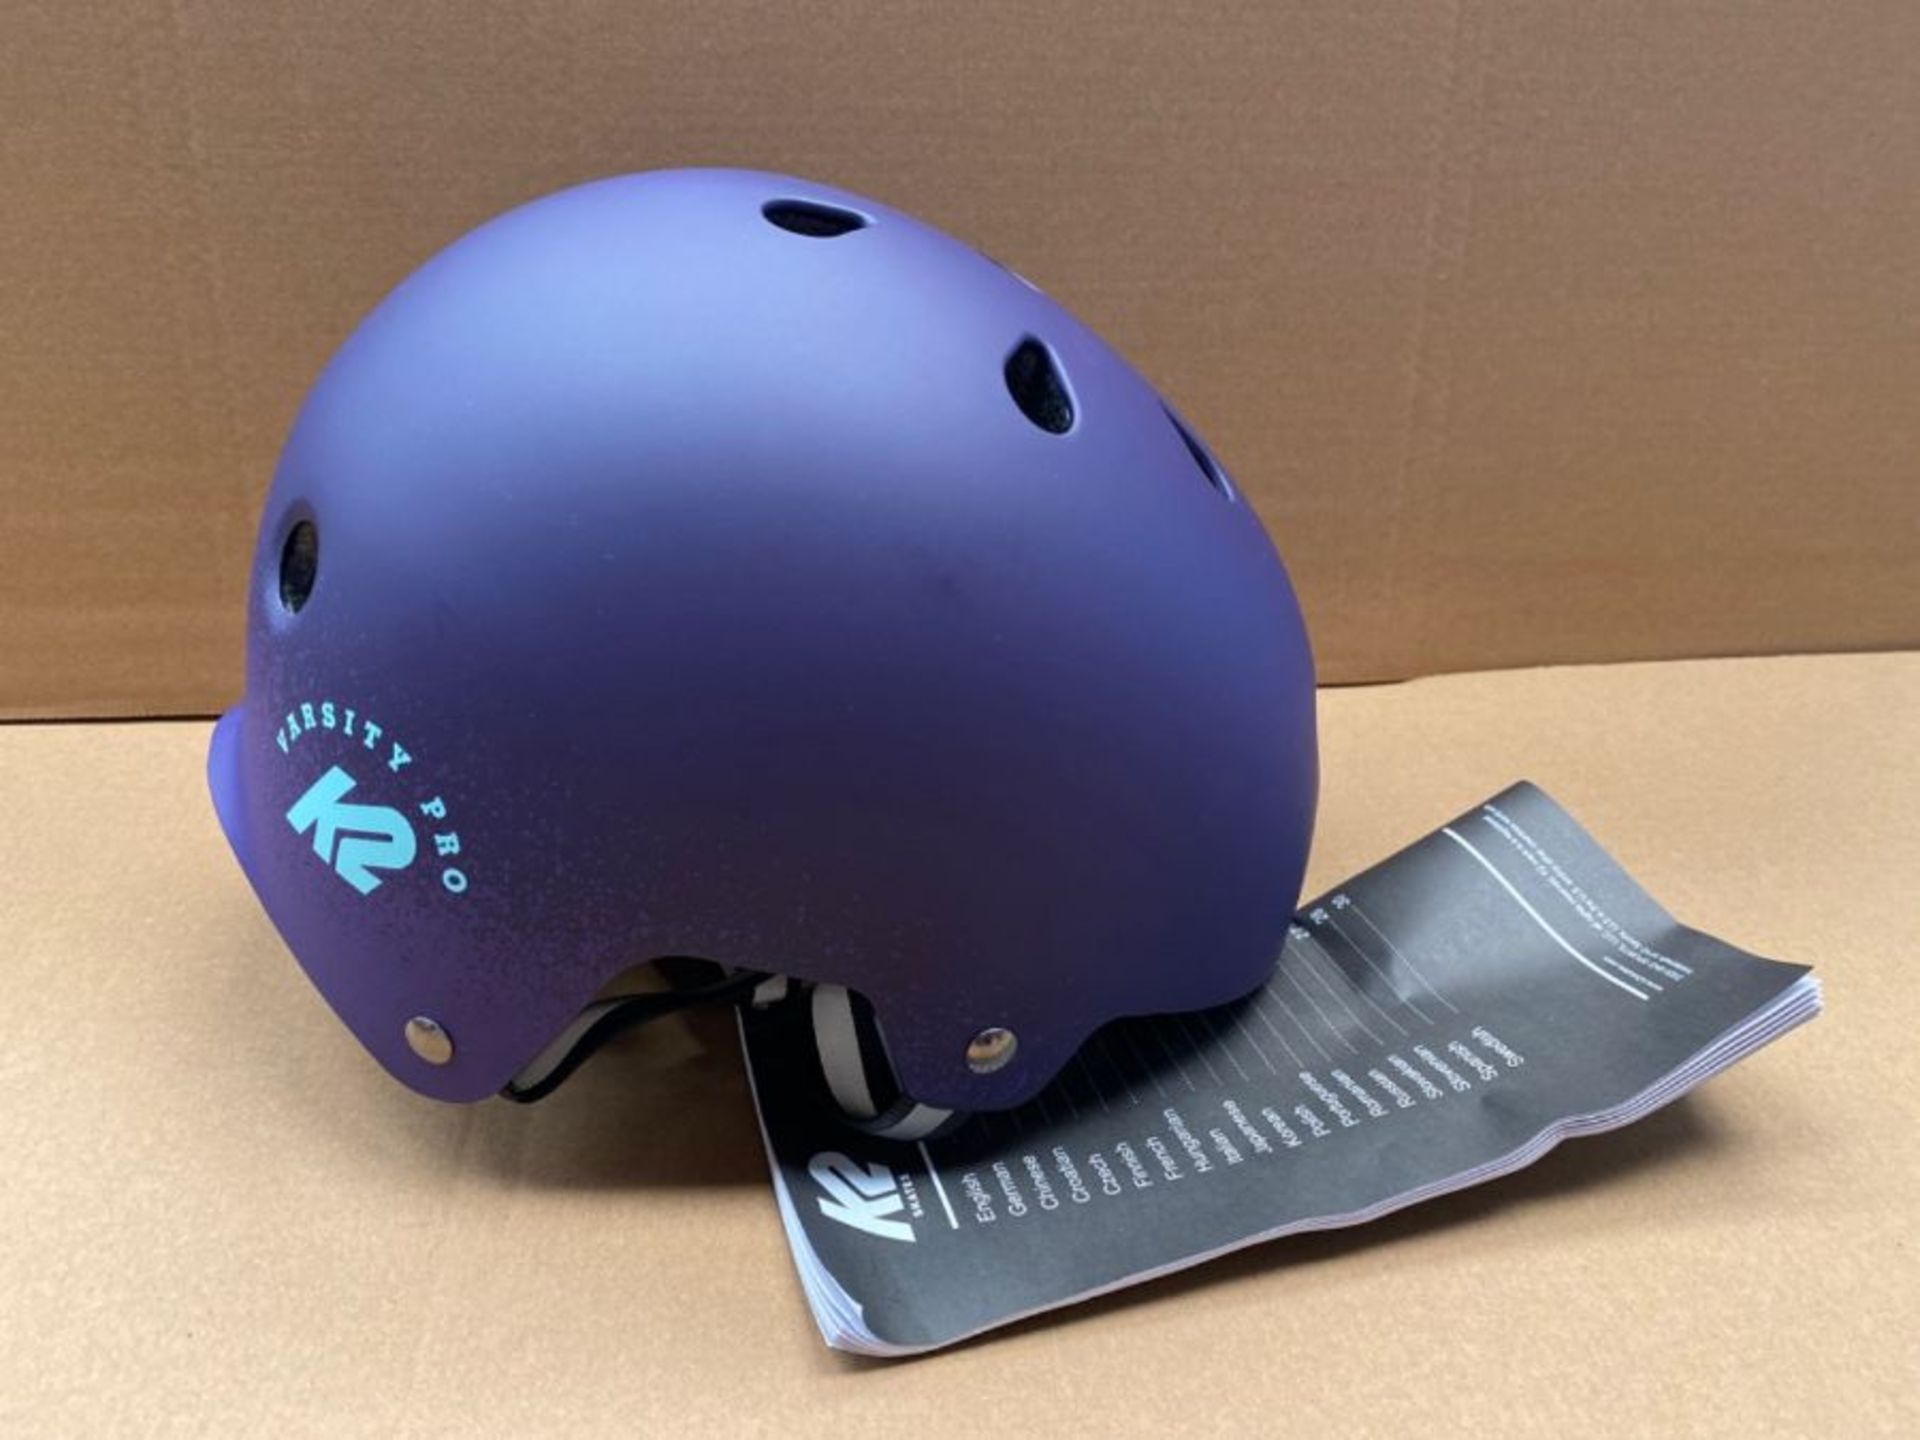 K2 Unisex - Adult's Varsity PRO Helmet, Purple, S (48-54cm) - Image 3 of 3